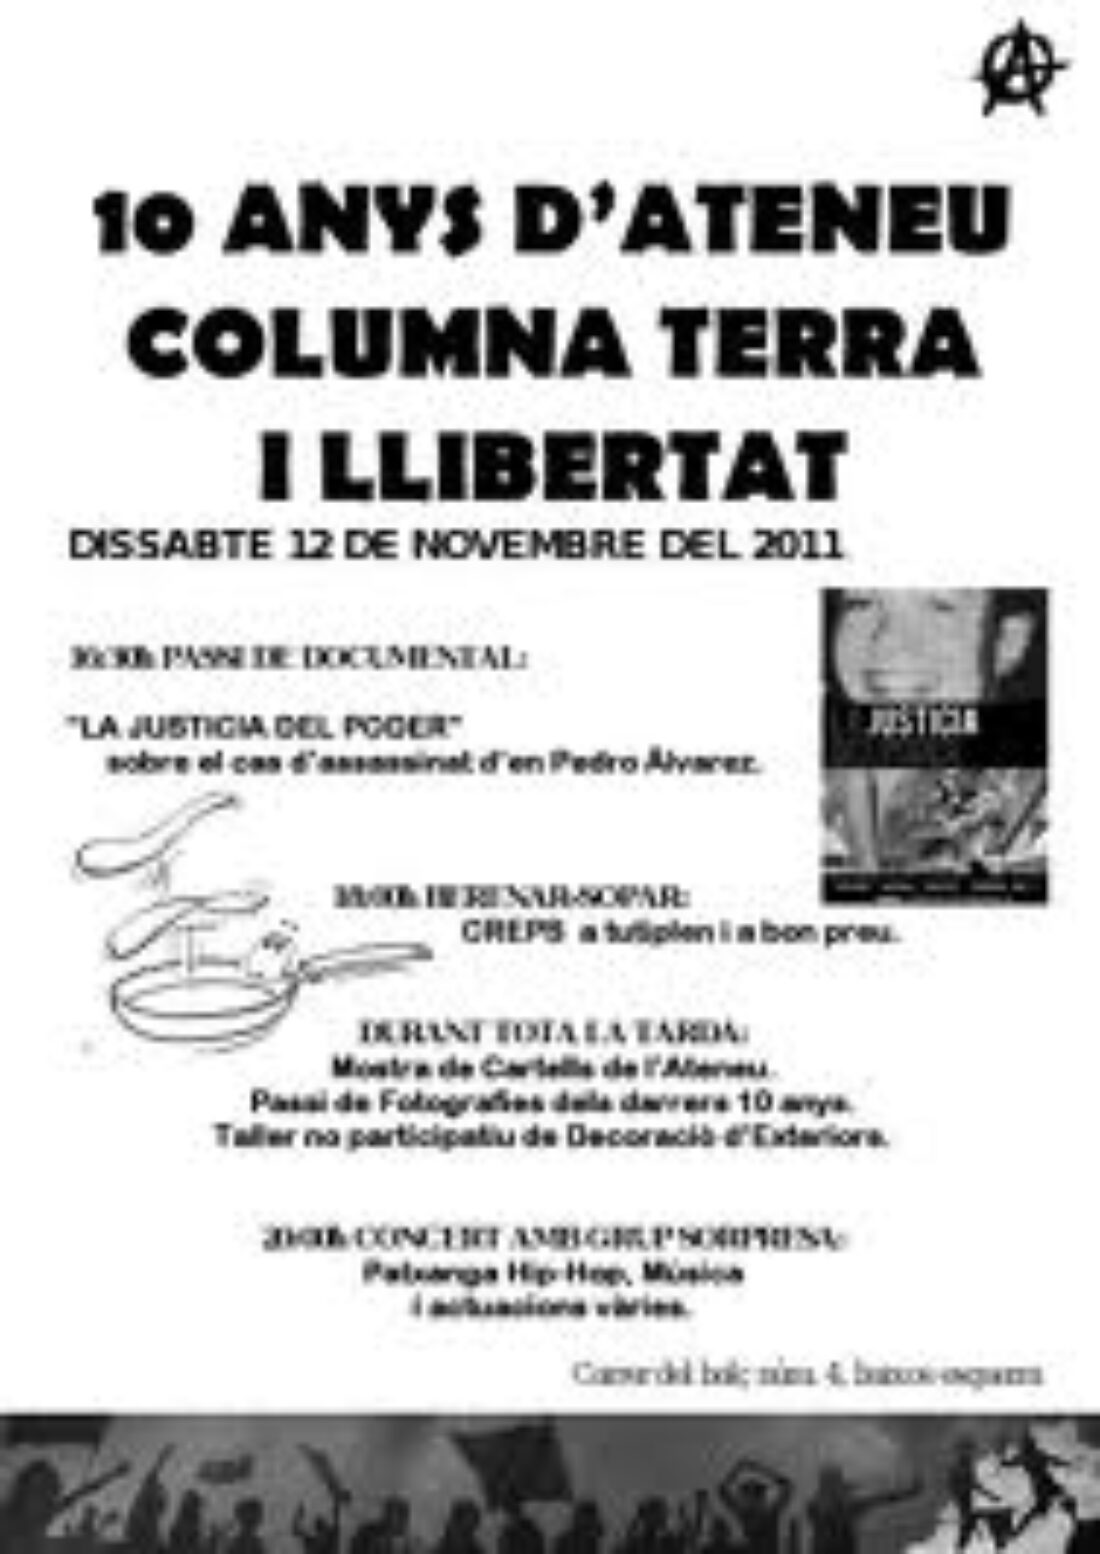 Décimo aniversario del Ateneo Columna Terra i Llibertat de Berga